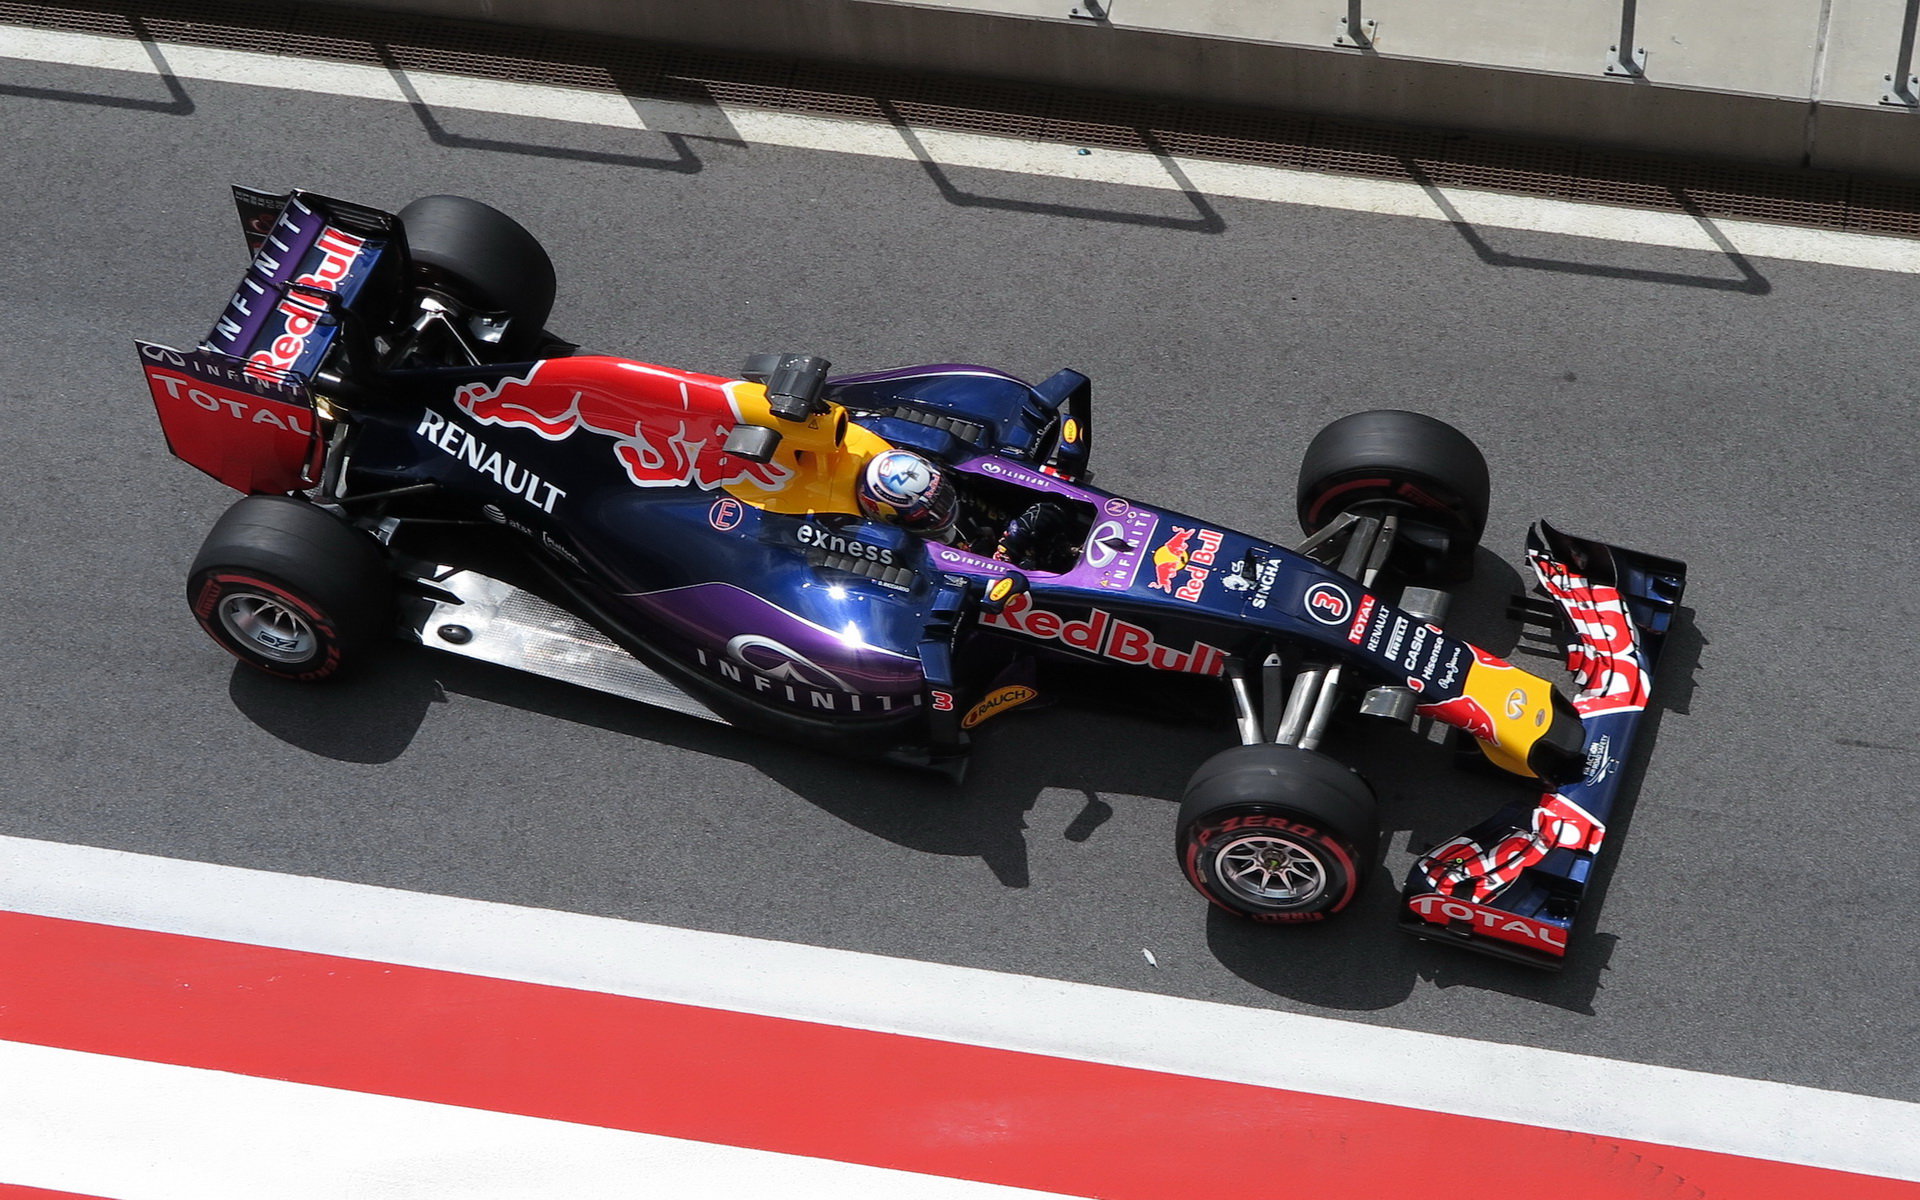 Restarty pohonné jednotky Ricciardovi žel nepomohly